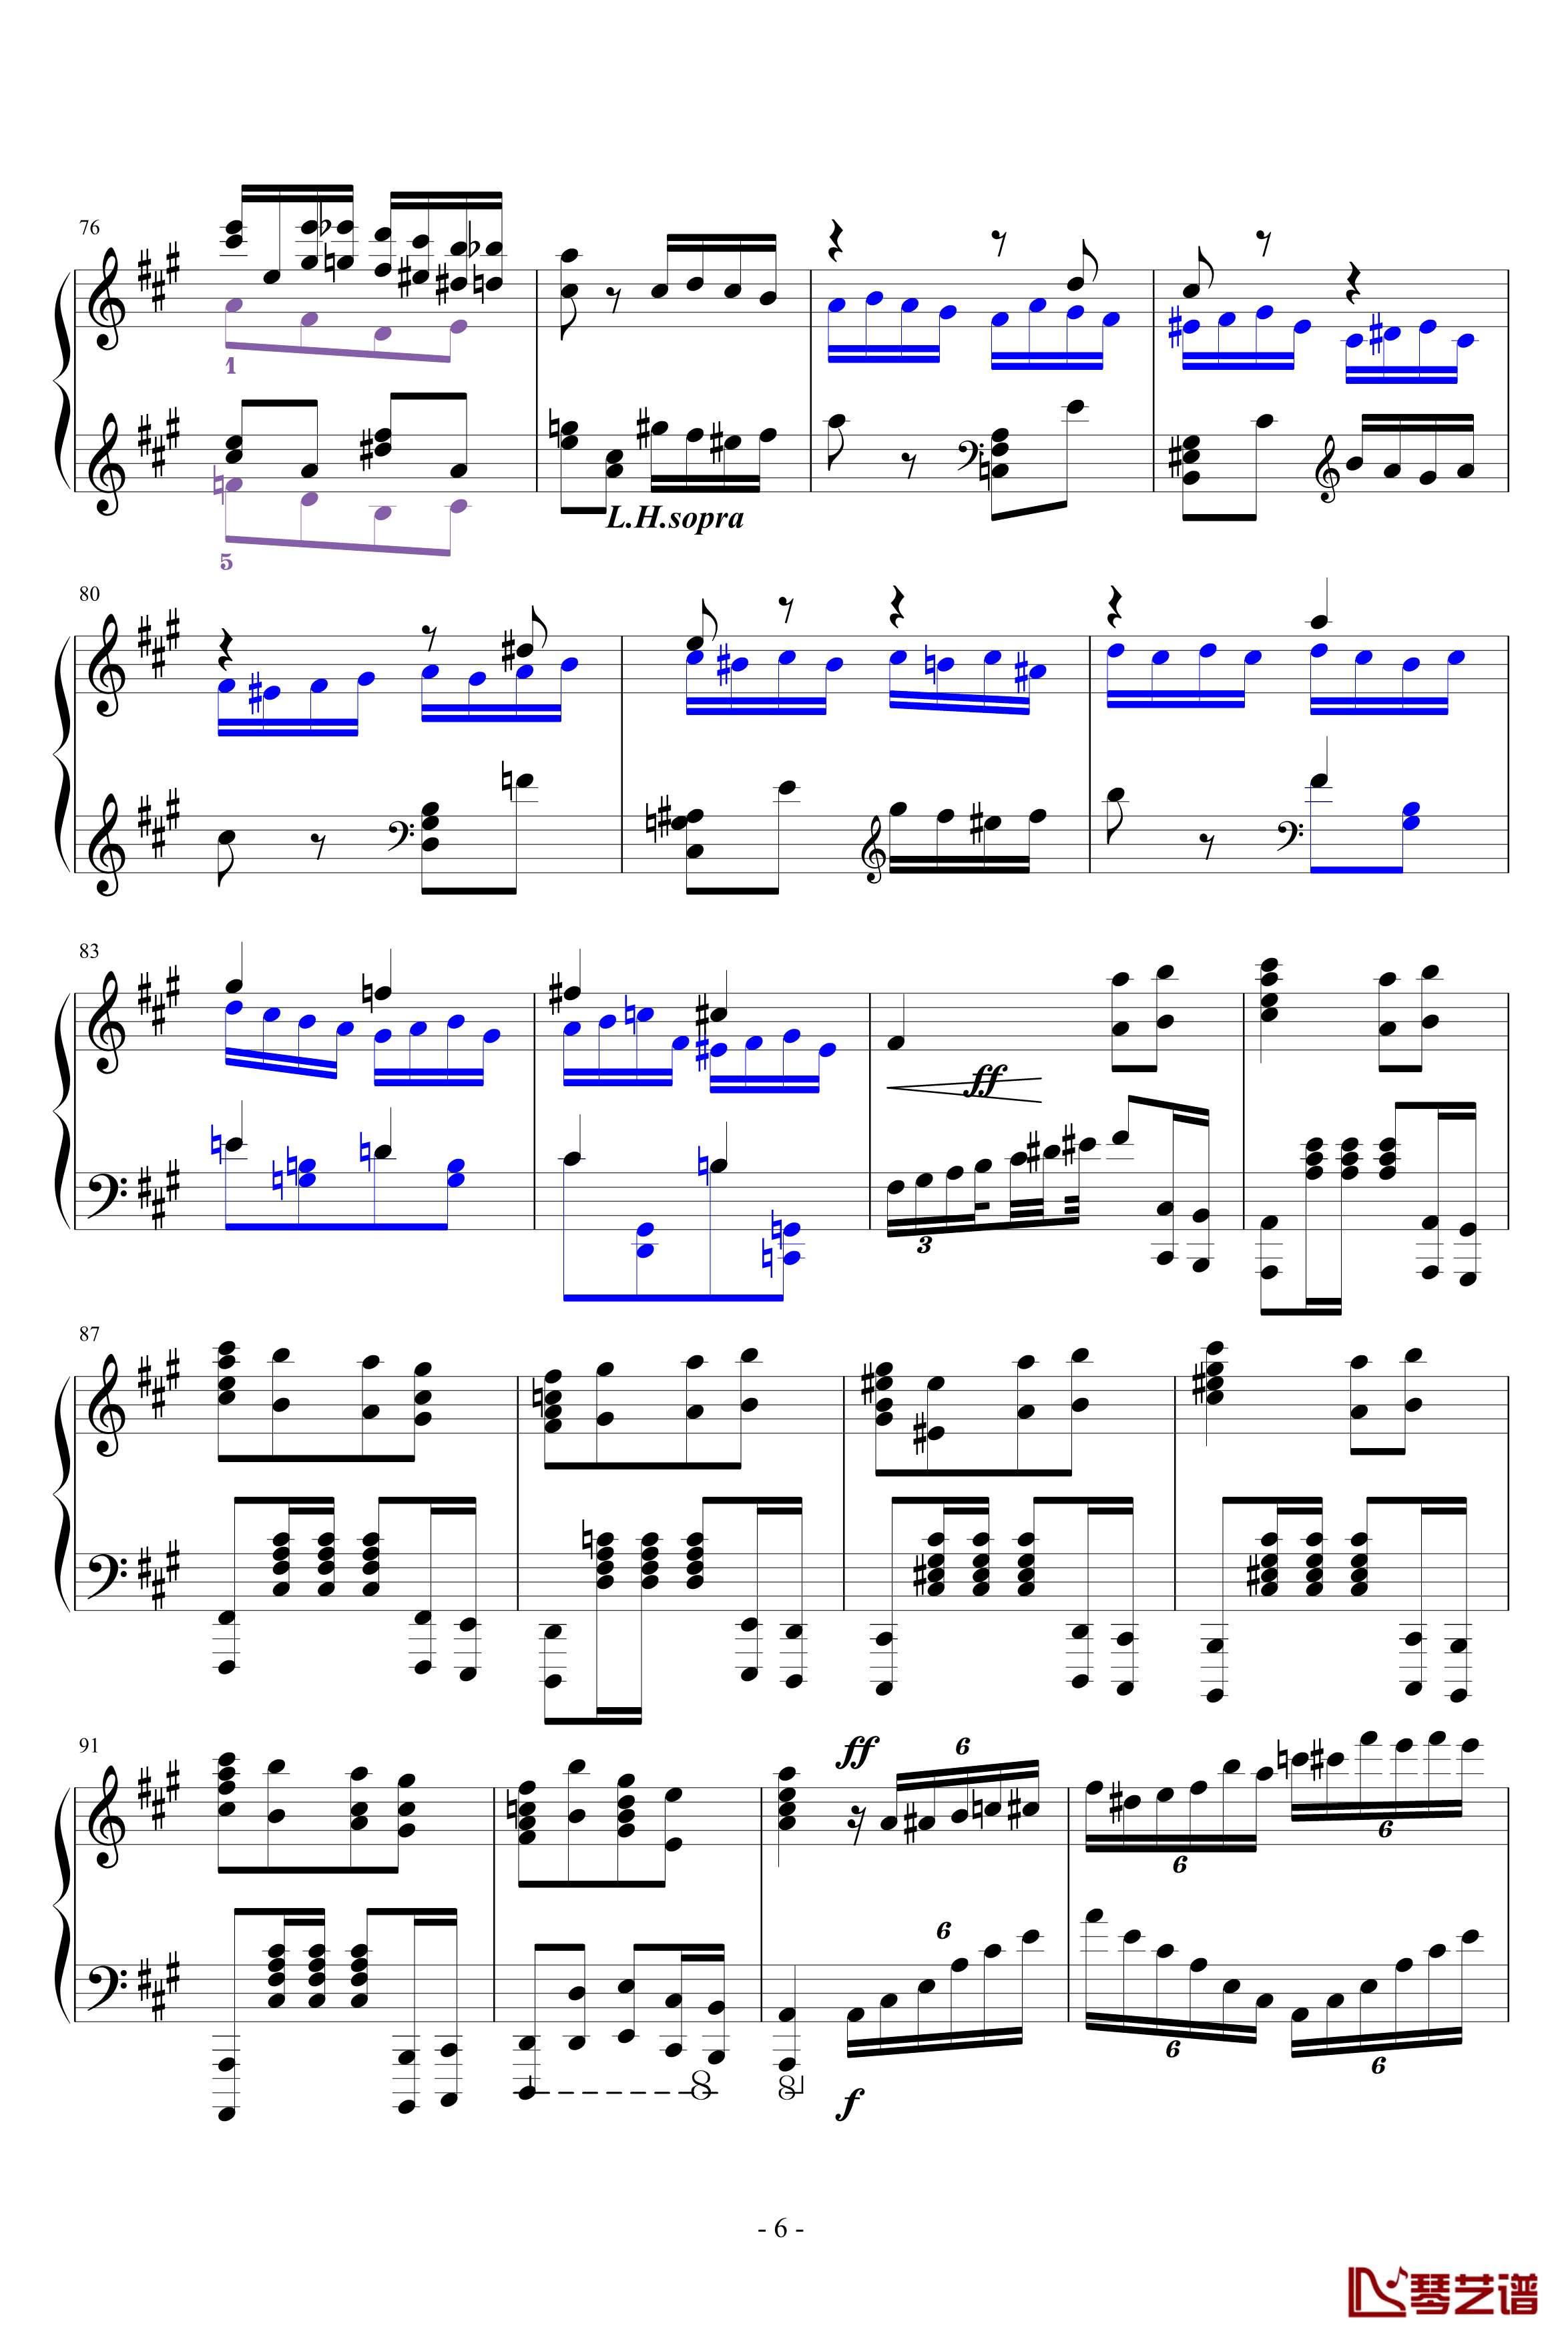 瓦洛多斯土耳其钢琴谱-爵士版-完成品-瓦洛多斯6